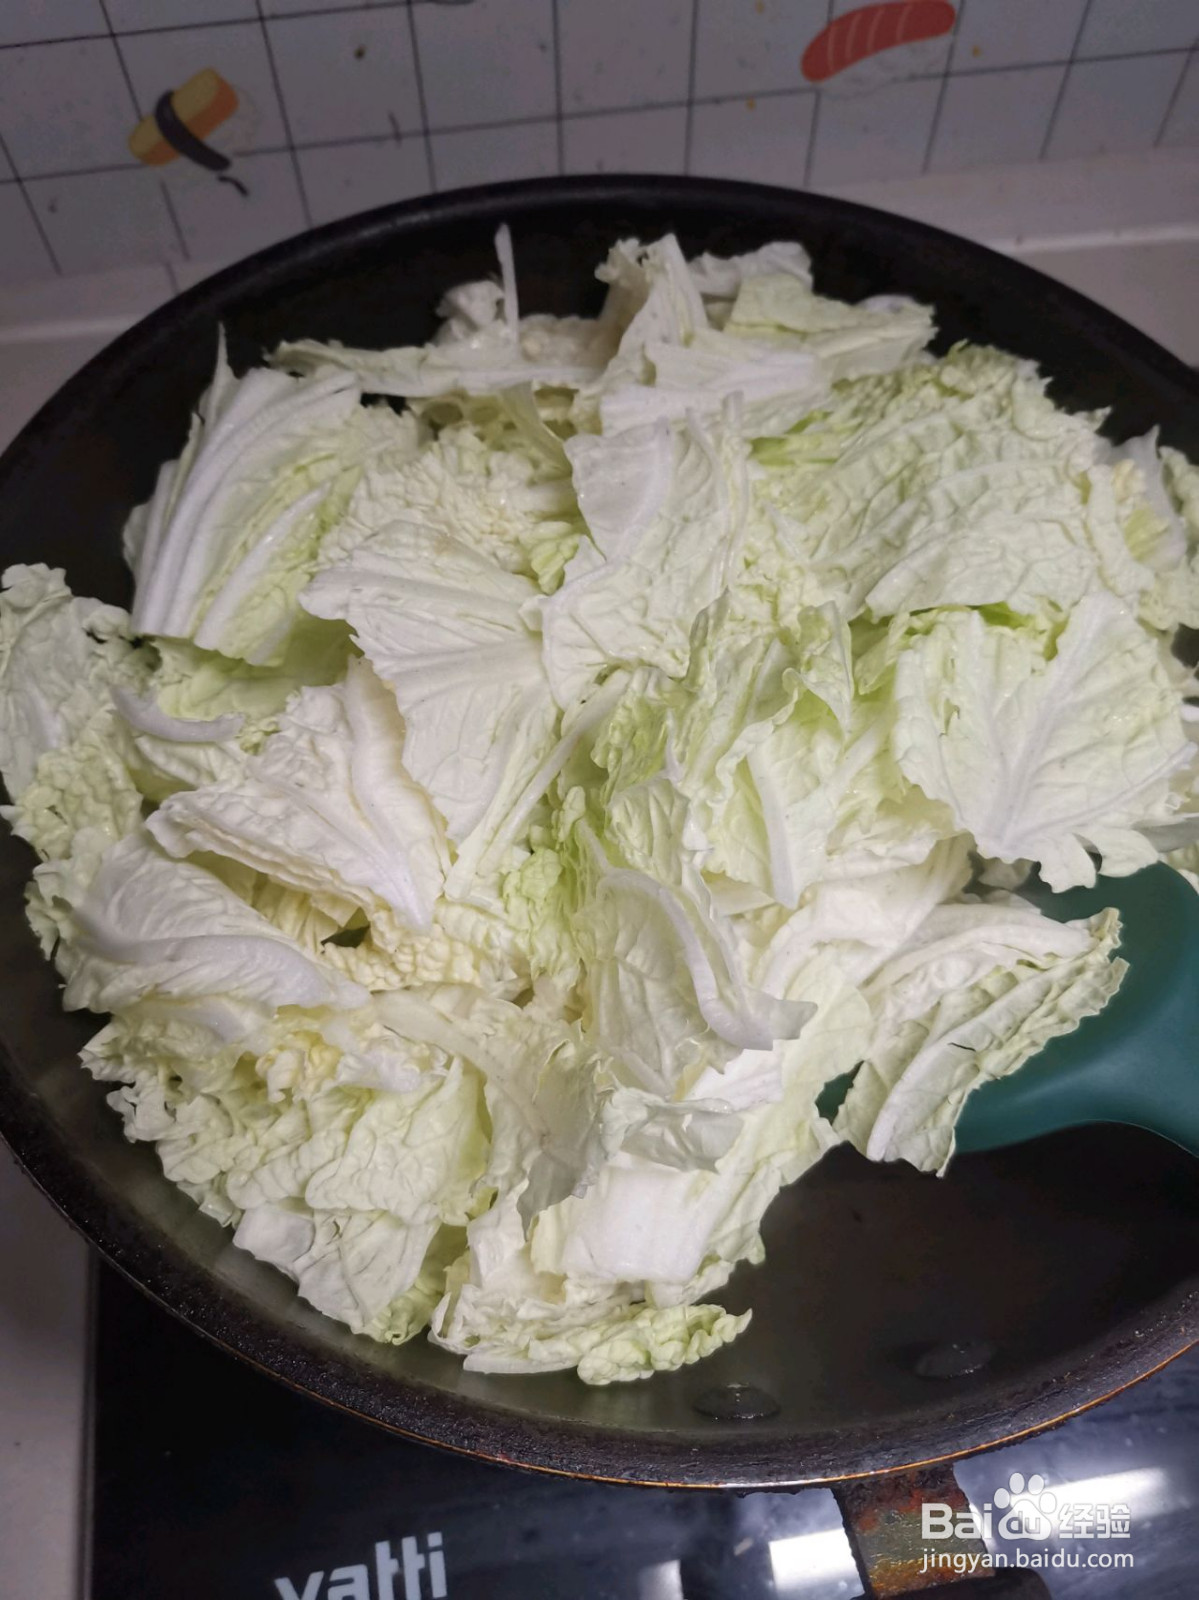 白菜炖豆腐的做法